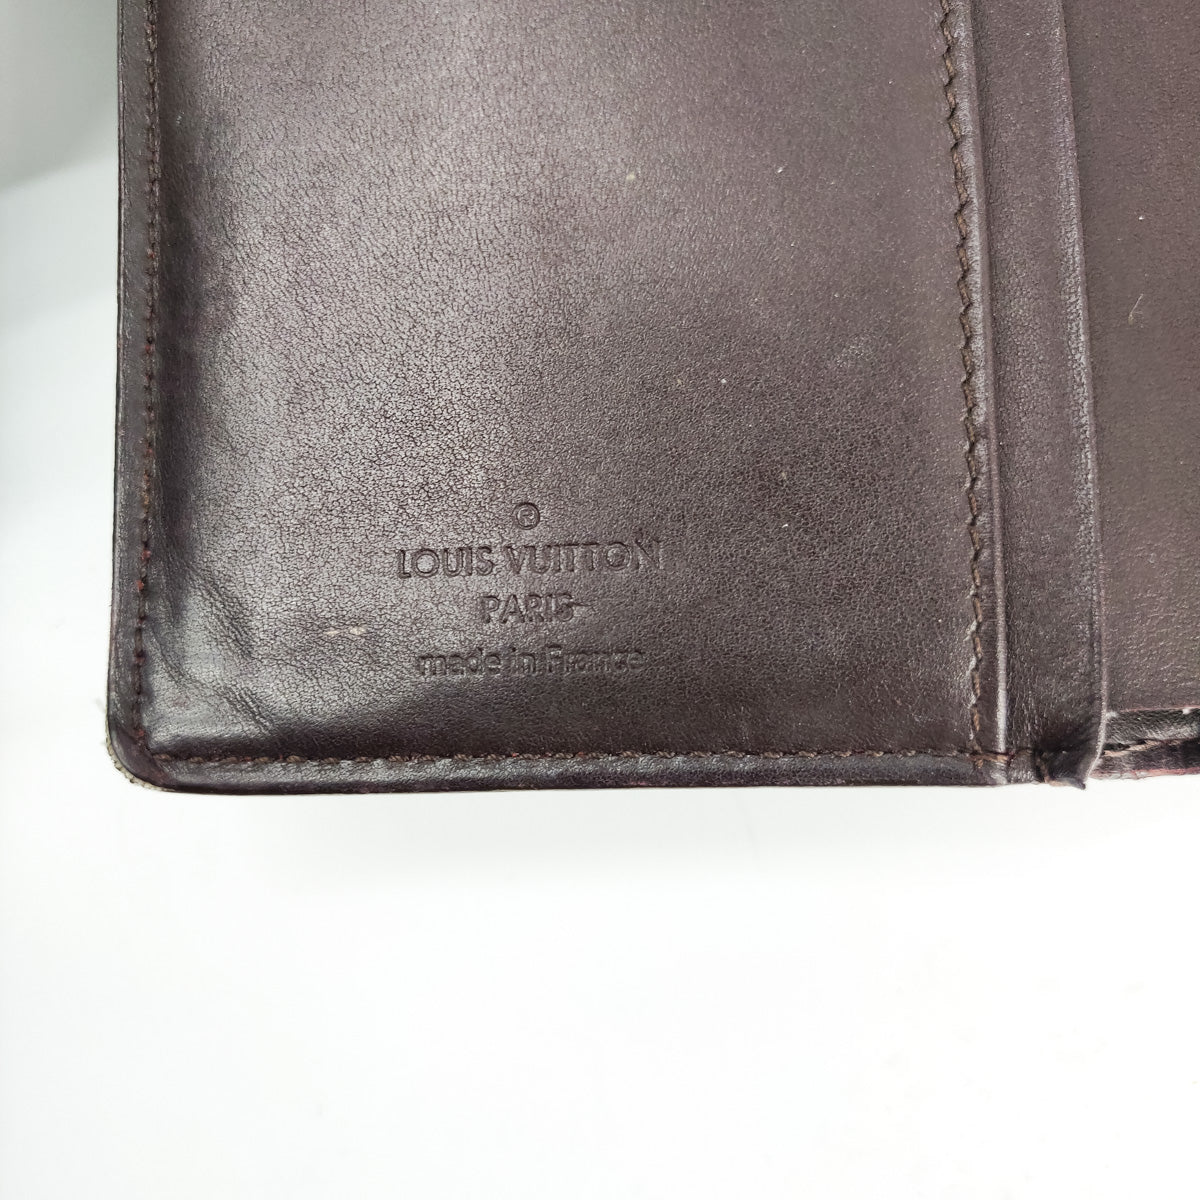 Louis Vuitton Monogram Vernis French Purse Wallet - THE PURSE AFFAIR